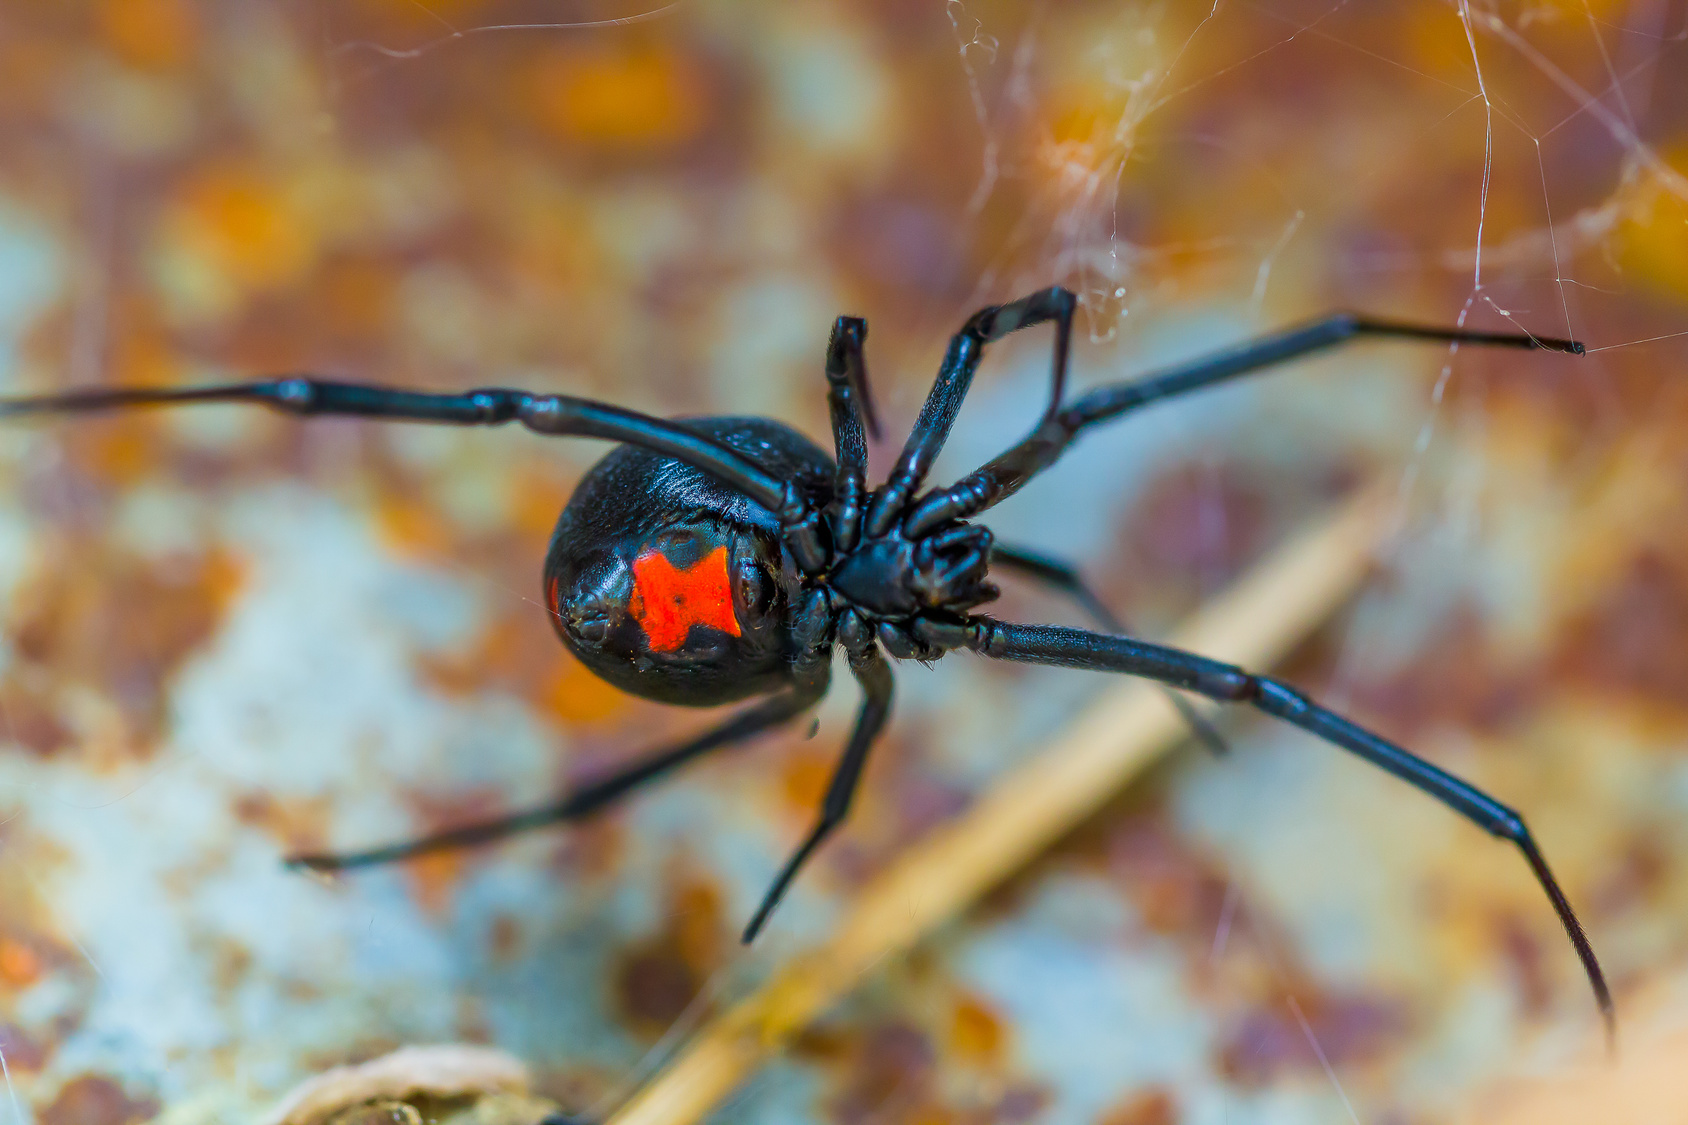 Das hätte schrecklich enden können: Mutter findet giftige Spinne in Supermarkt Trauben